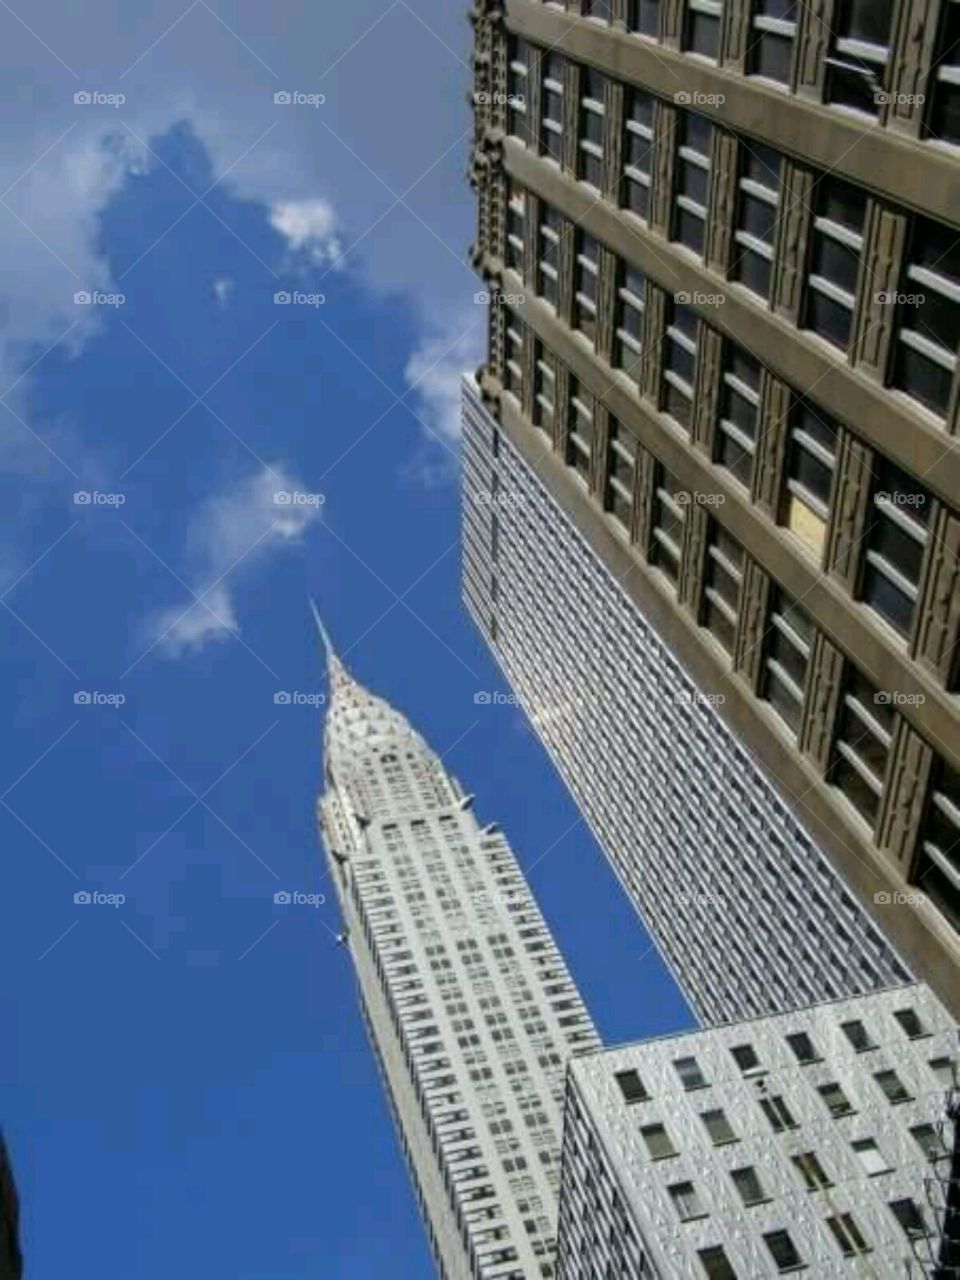 city skies. always looking up in NYC